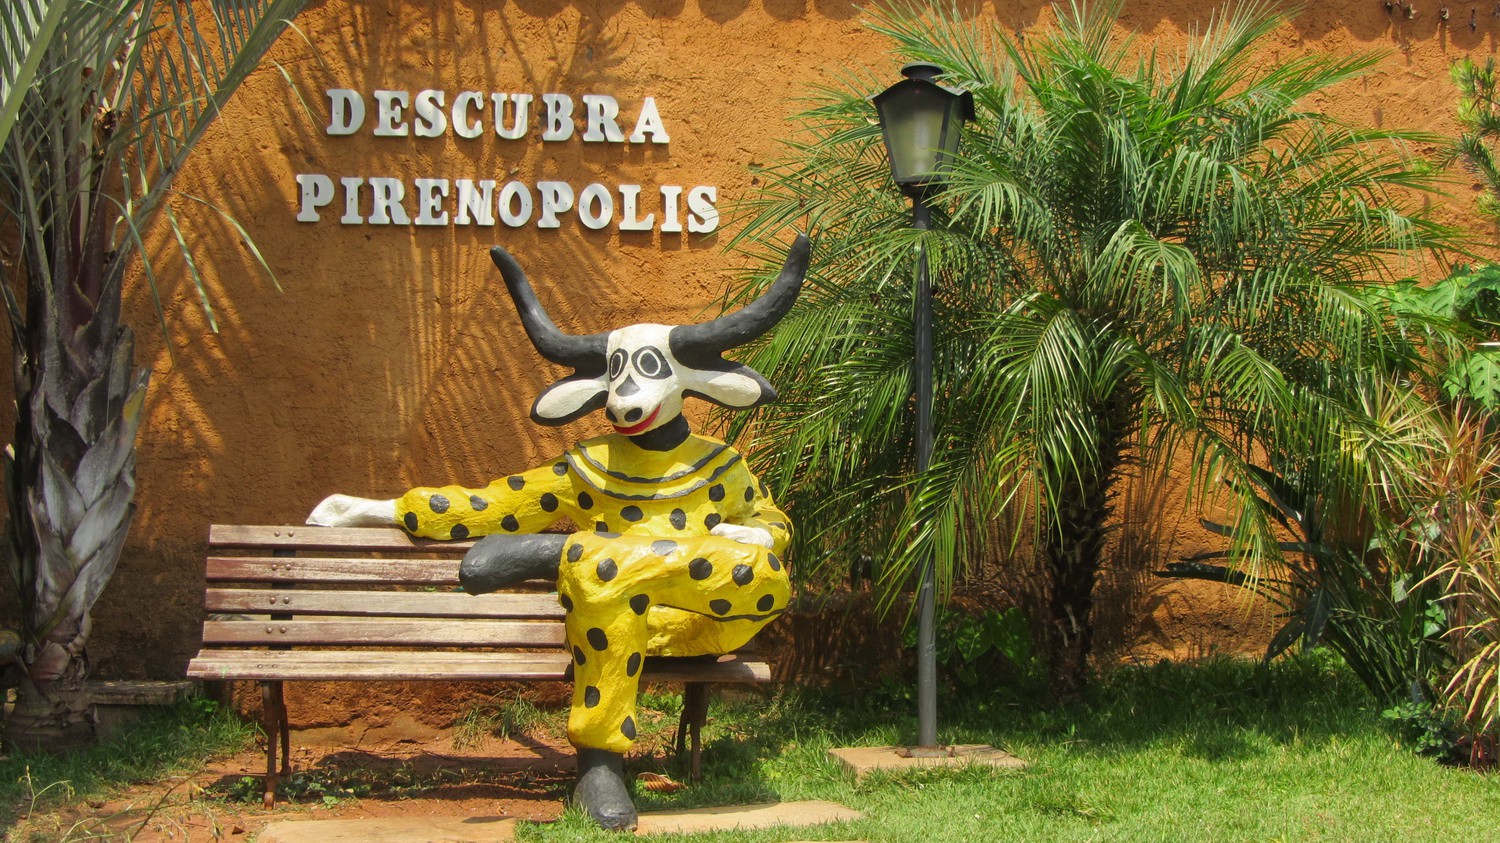 Mascot of Pirenopolis - it is a cattle region